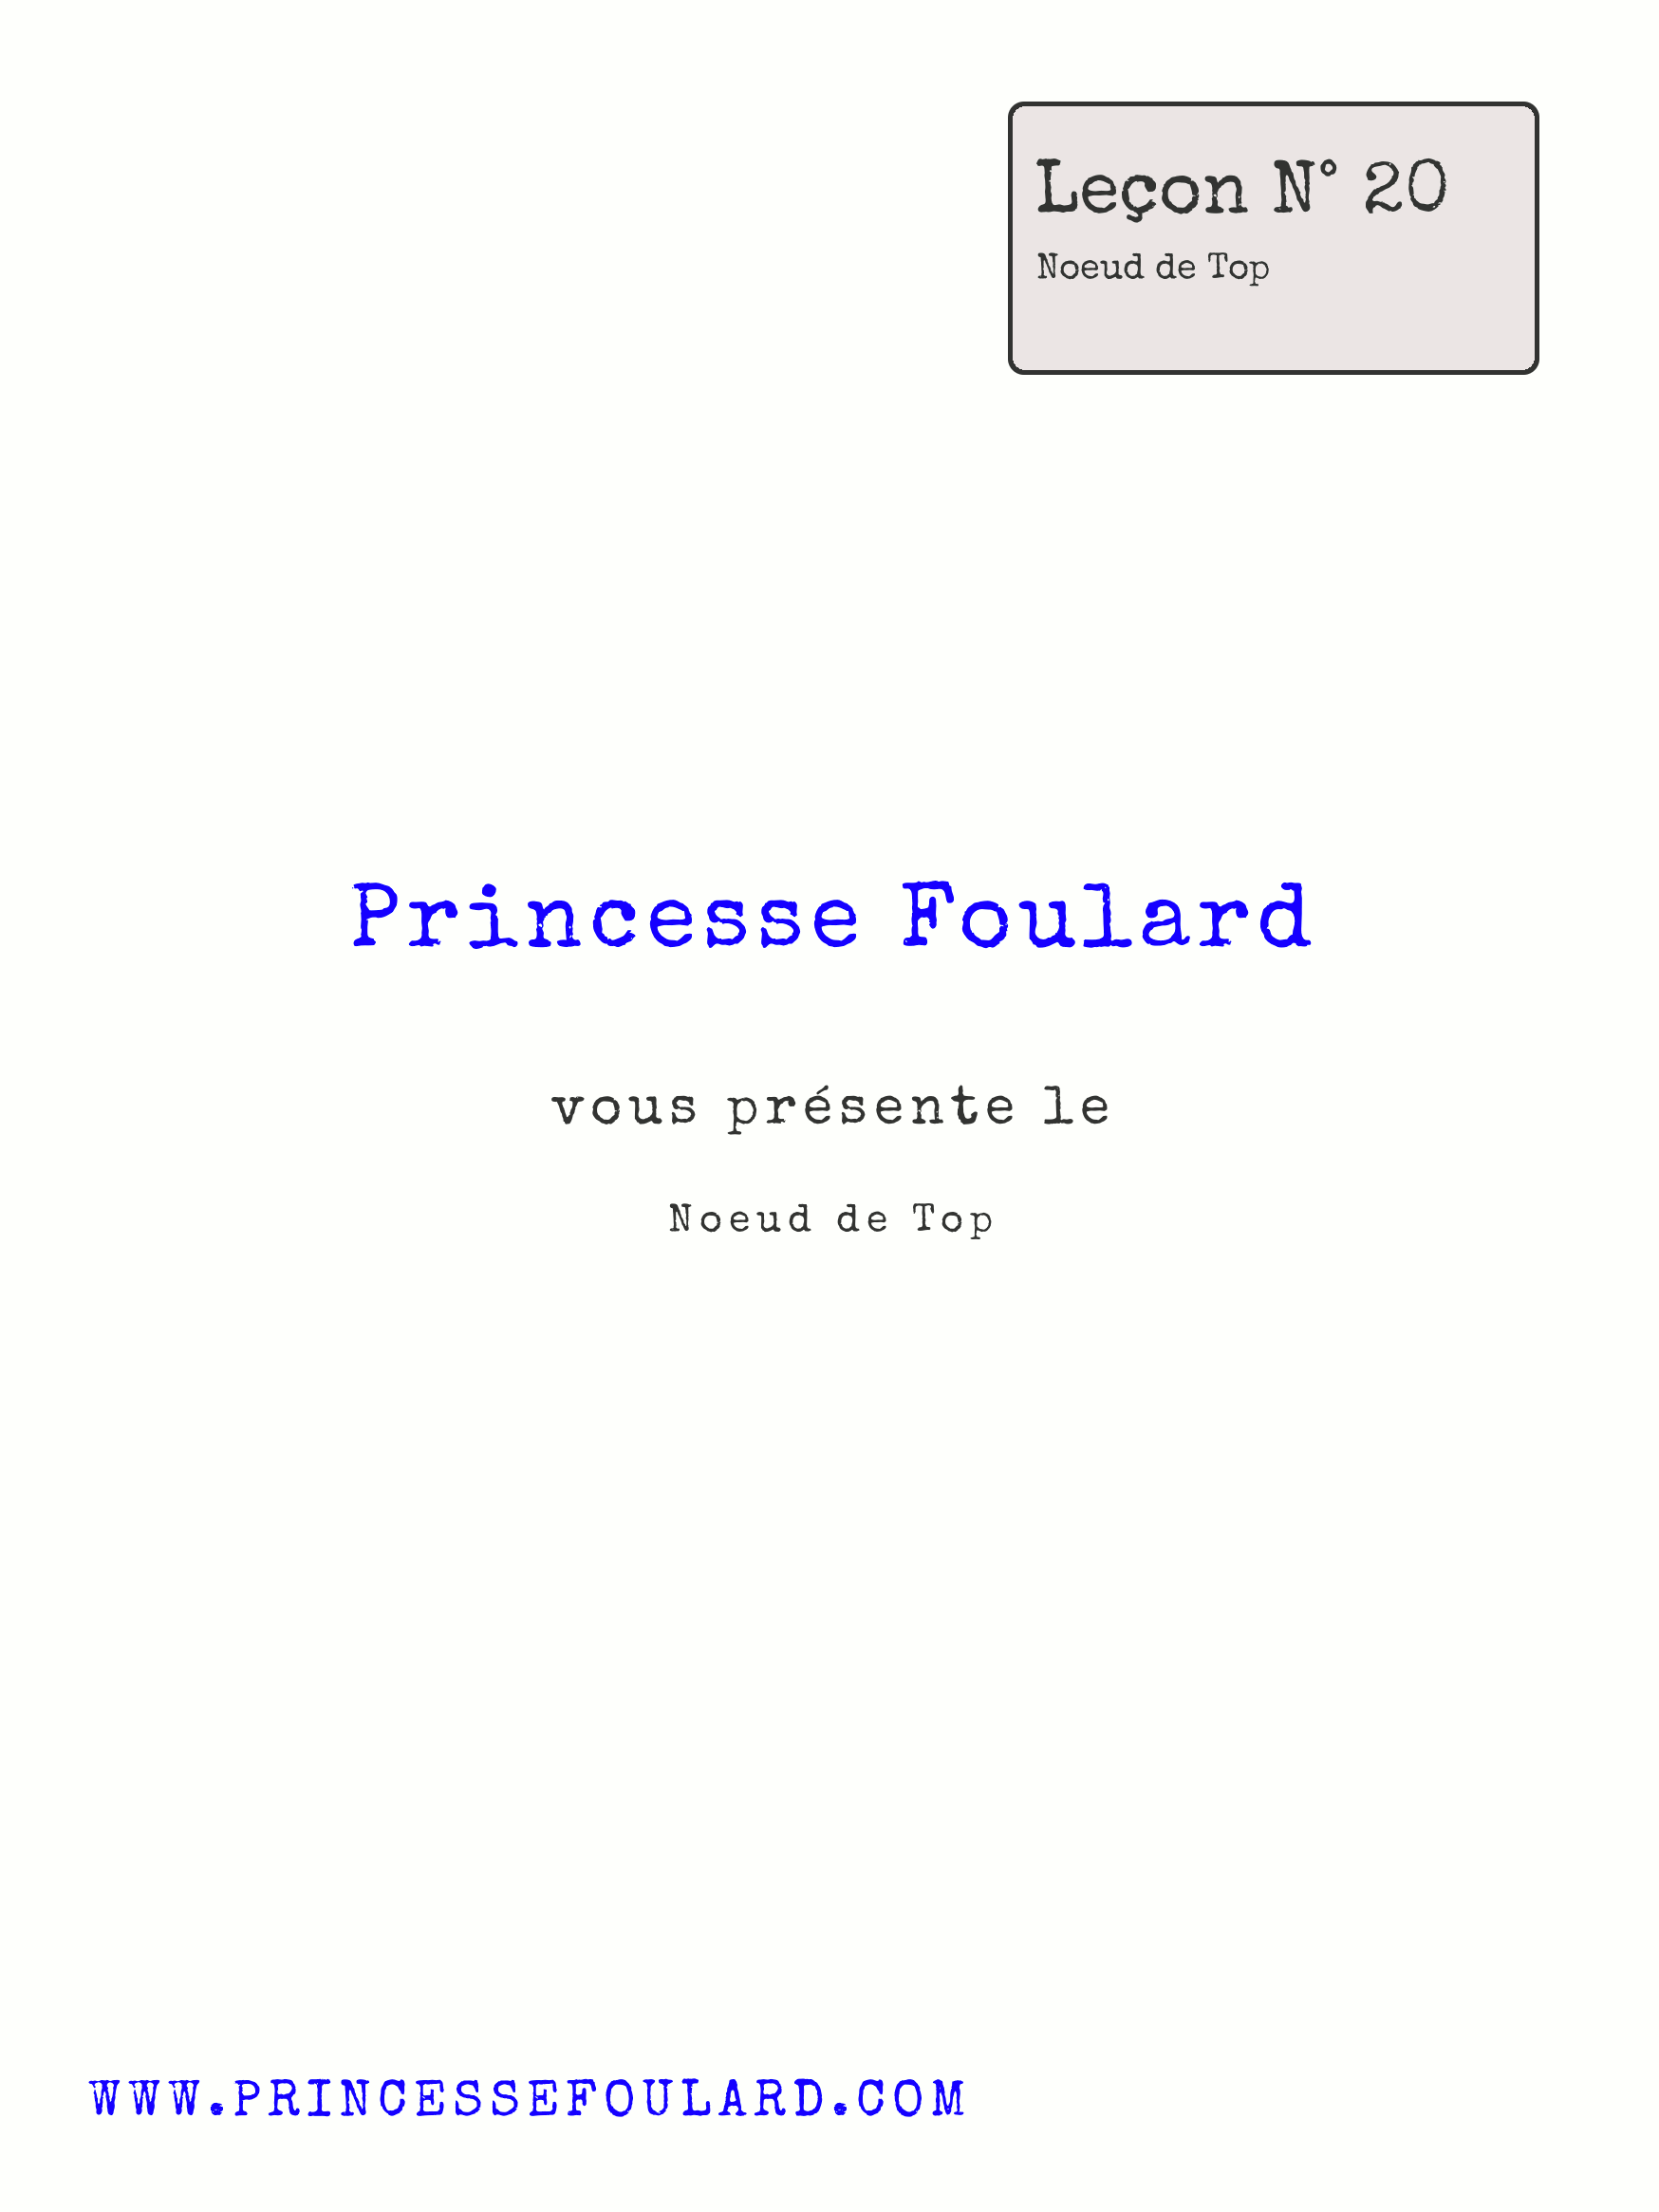 Tuto Noeud de Foulard en top par "Princesse Foulard"